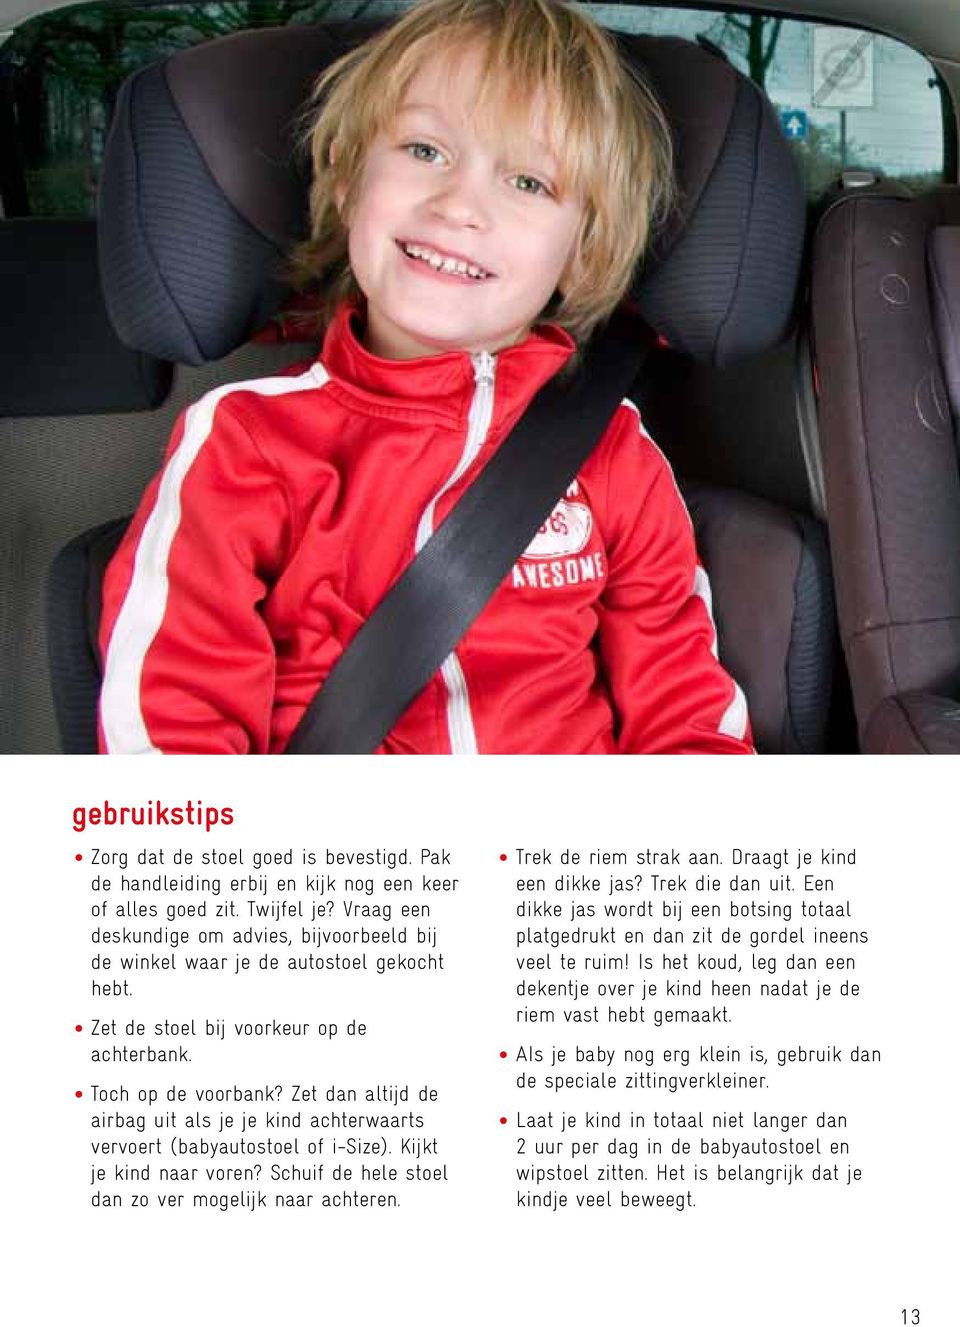 Zet dan altijd de airbag uit als je je kind achterwaarts vervoert (babyautostoel of i-size). Kijkt je kind naar voren? Schuif de hele stoel dan zo ver mogelijk naar achteren. Trek de riem strak aan.